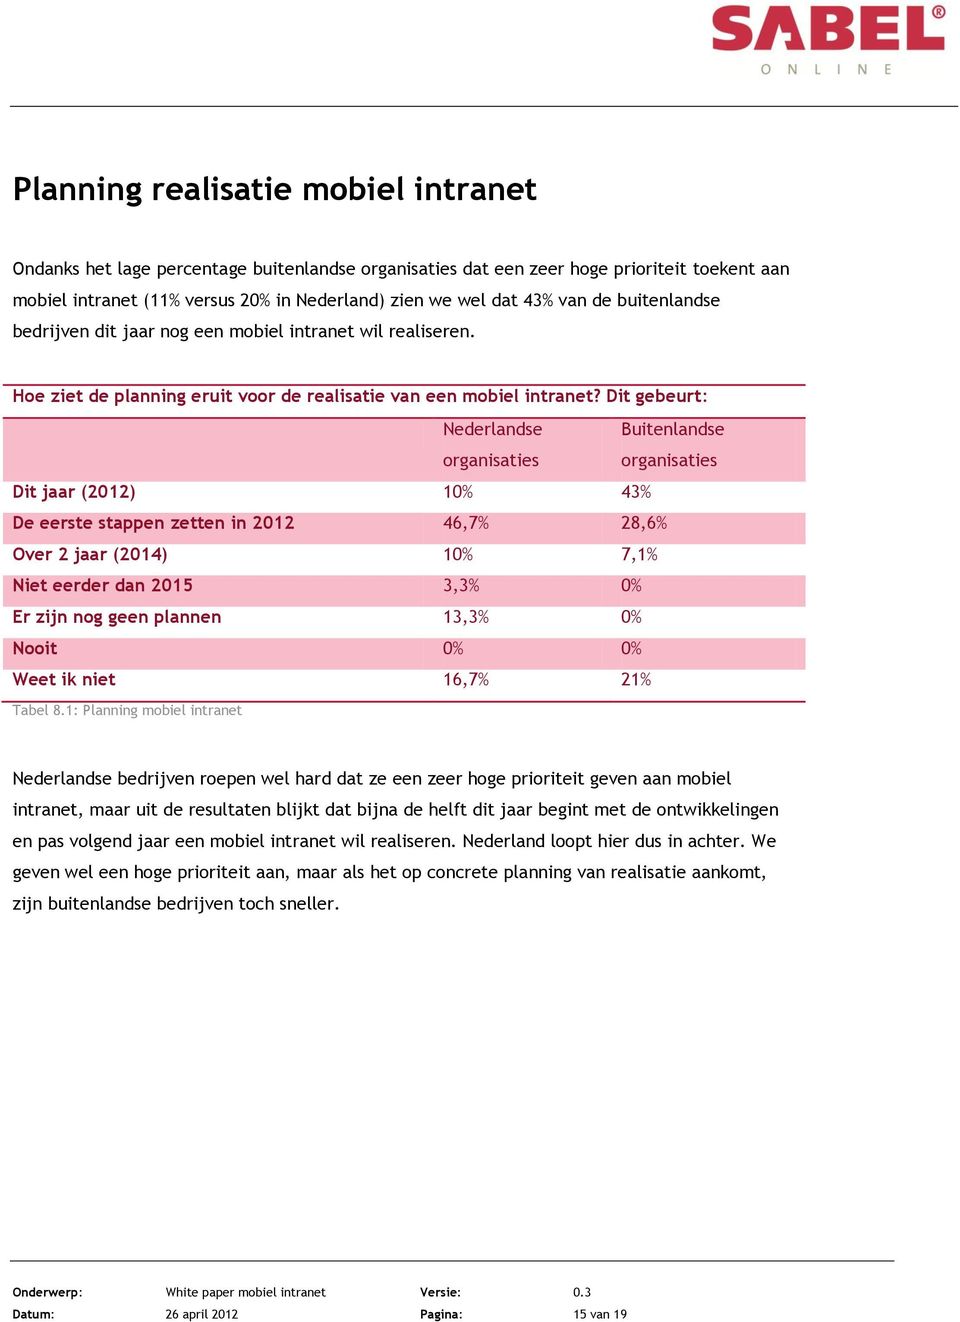 Dit gebeurt: Nederlandse Buitenlandse Dit jaar (2012) 10% 43% De eerste stappen zetten in 2012 46,7% 28,6% Over 2 jaar (2014) 10% 7,1% Niet eerder dan 2015 3,3% 0% Er zijn nog geen plannen 13,3% 0%